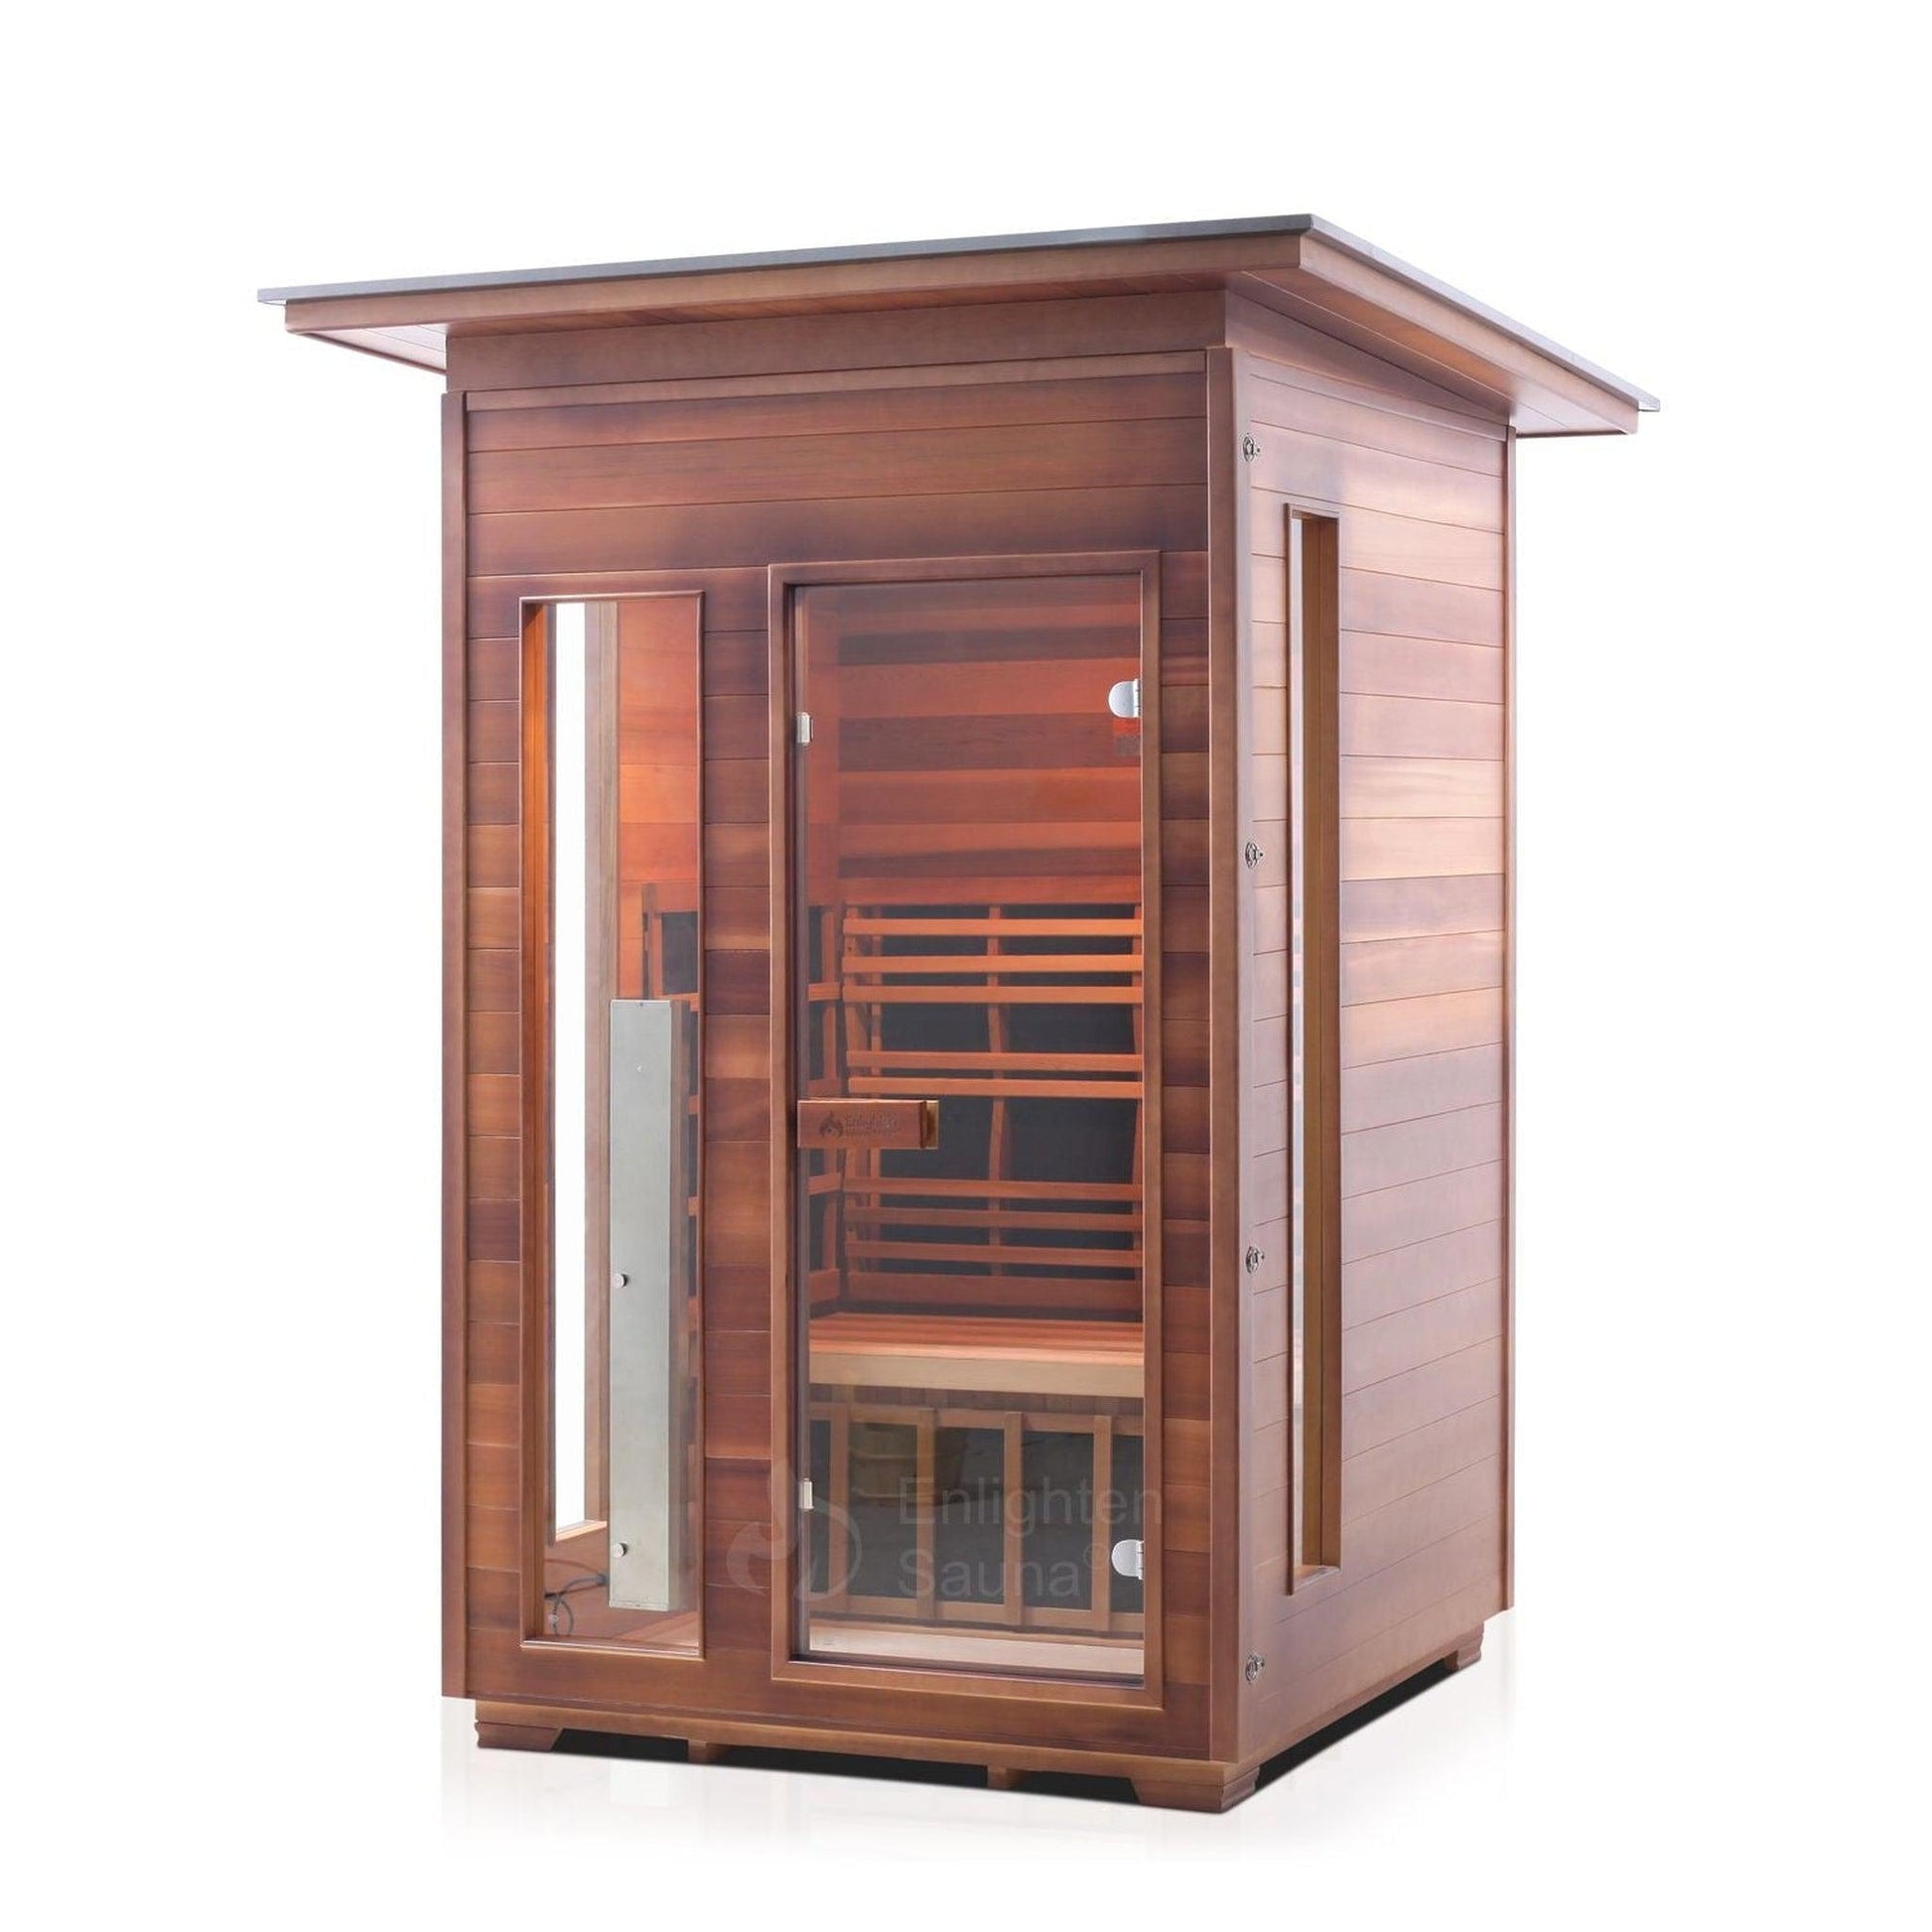 Enlighten InfraNature Original Rustic 2-Person Slope Roof Full Spectrum Infrared Outdoor Sauna